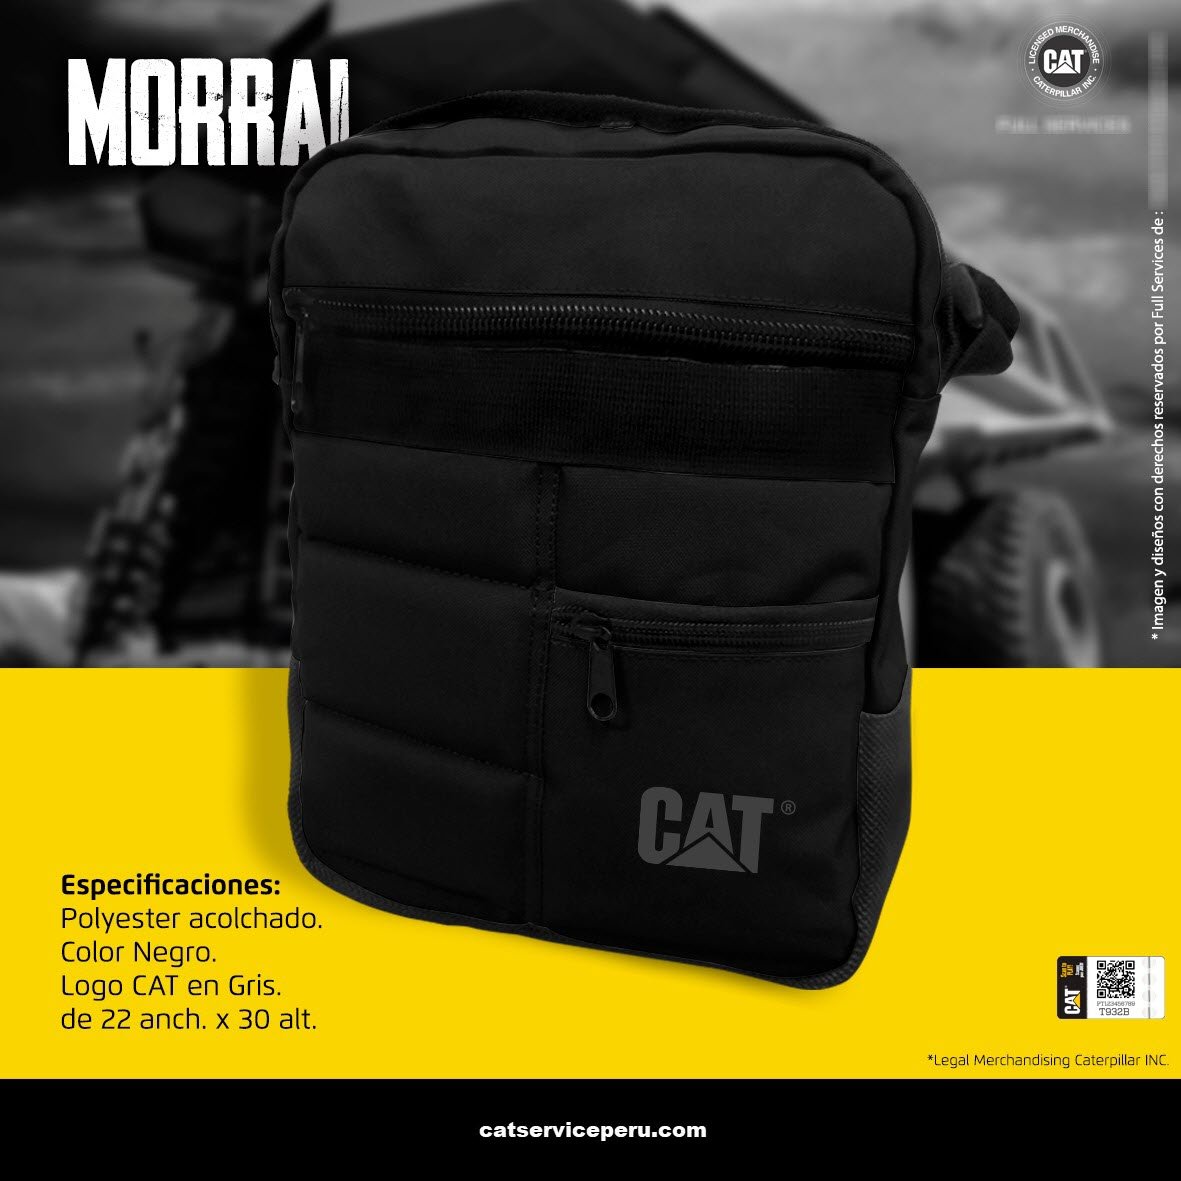 Morral Cat Negro - CAT SERVICE PERU S.A.C.